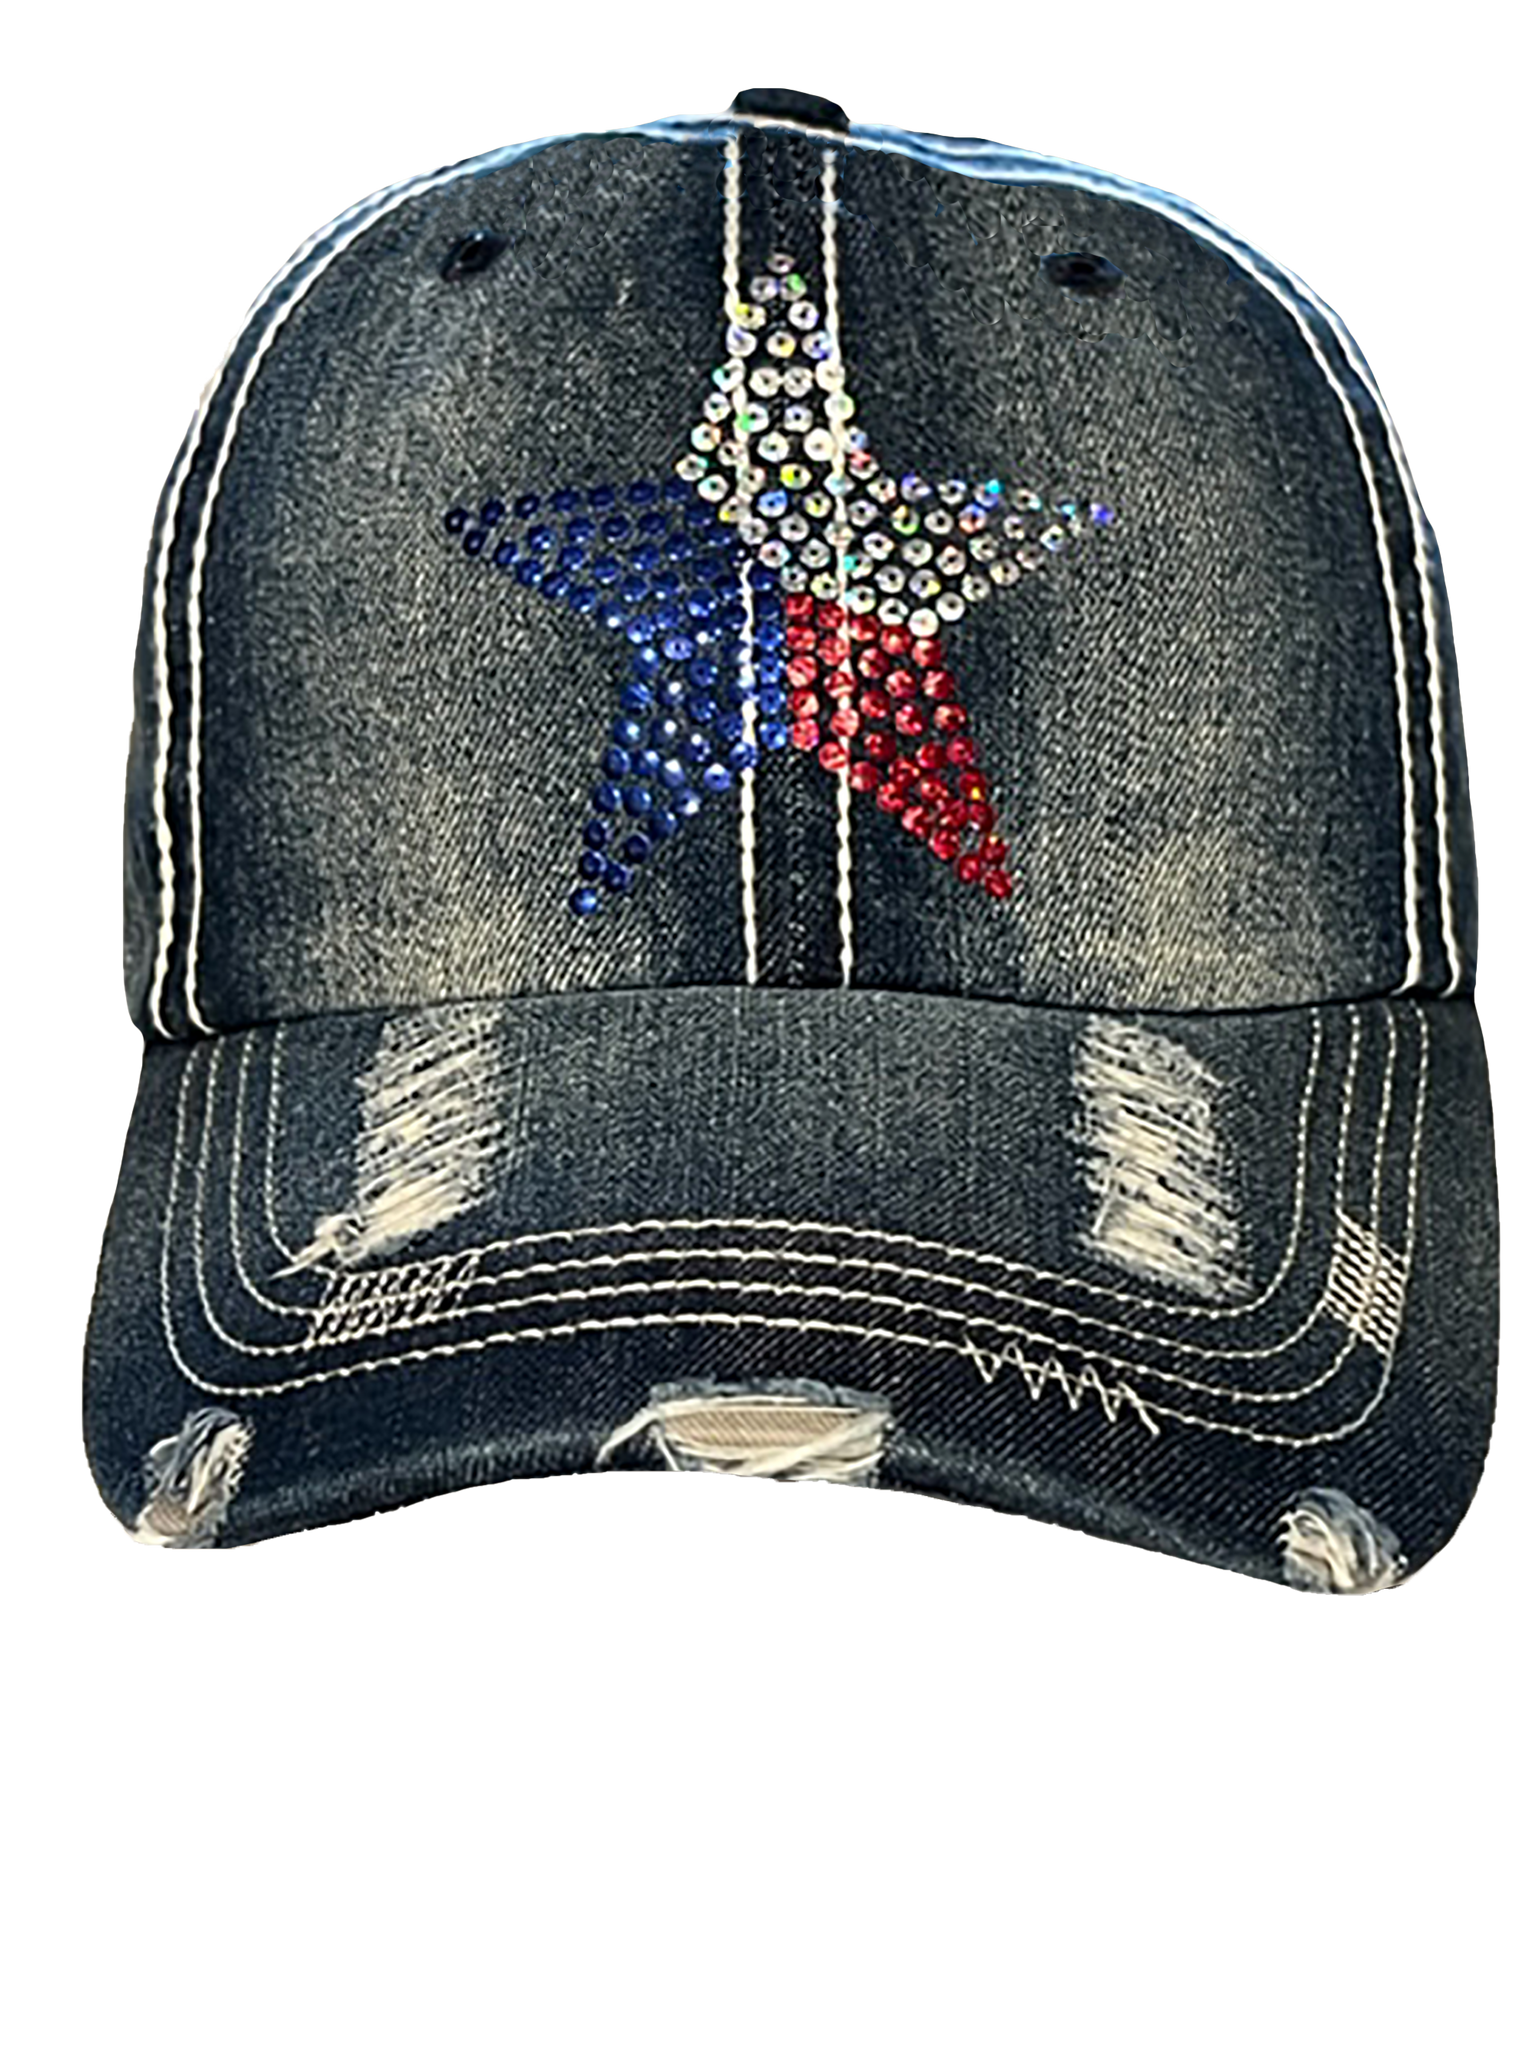 TEXAS STAR CAP